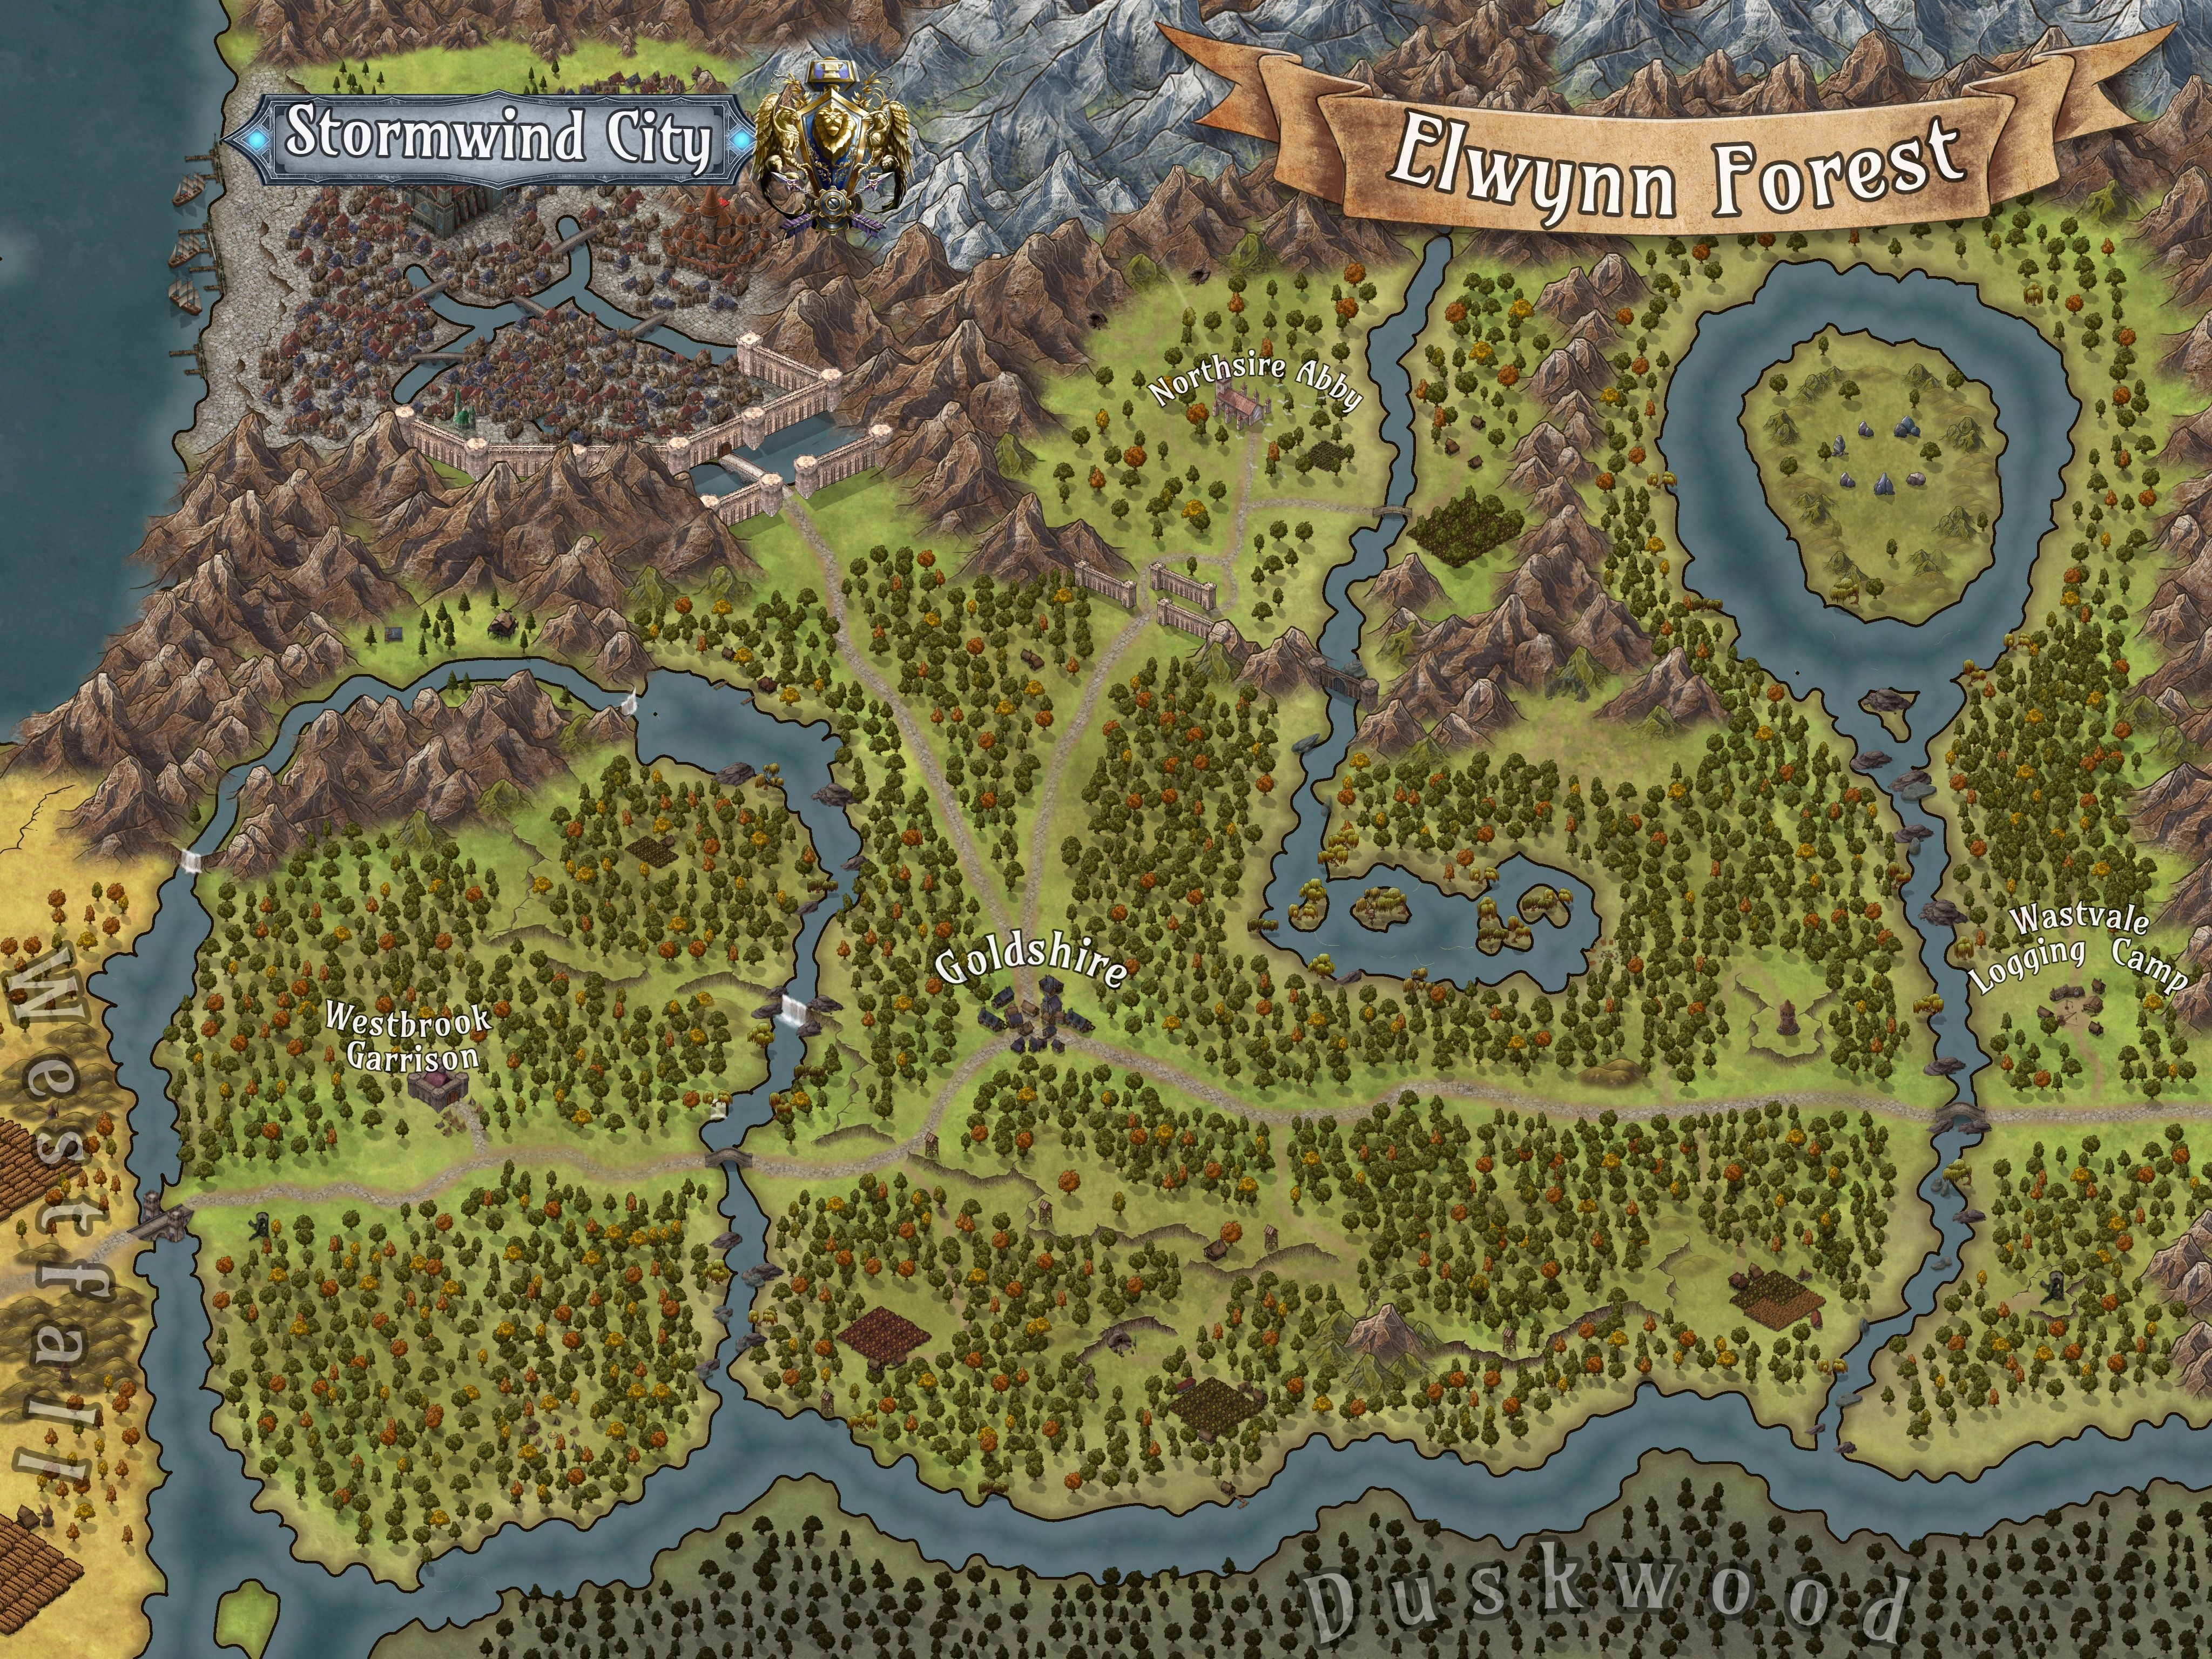 world-of-warcraft-elwynn-forest-map-esben-1